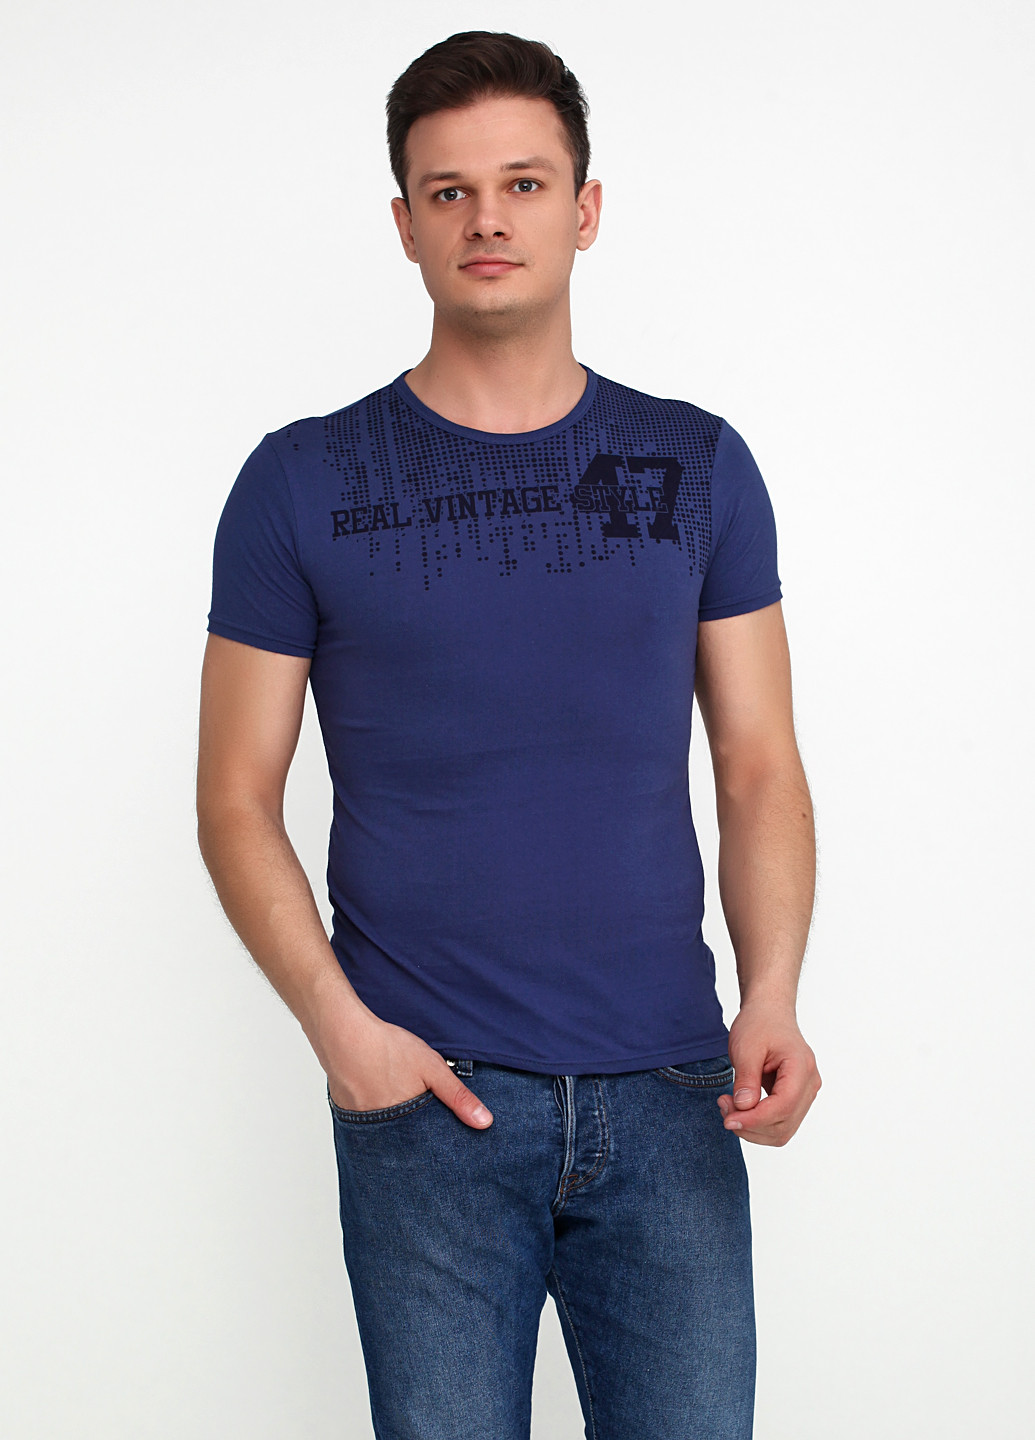 Темно-синяя футболка Benger